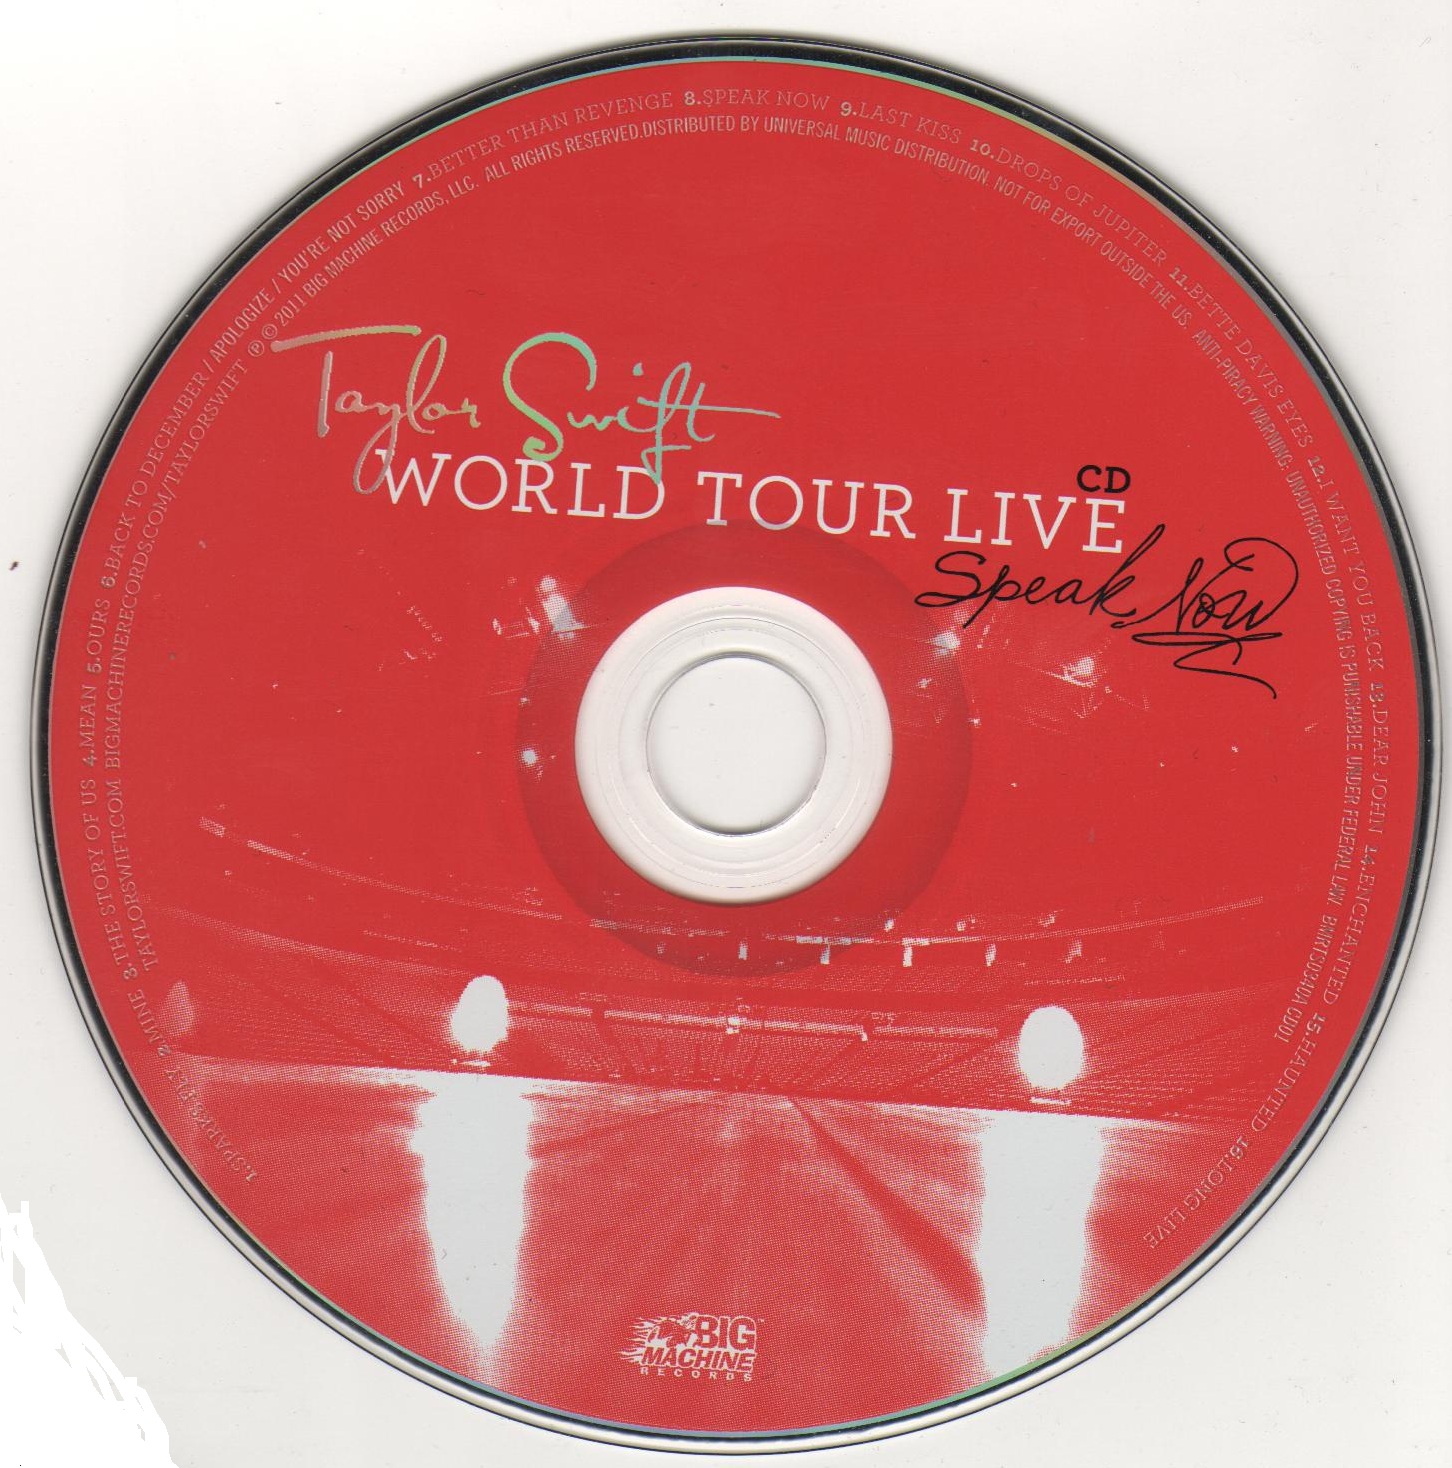 Speak now world tour tickets